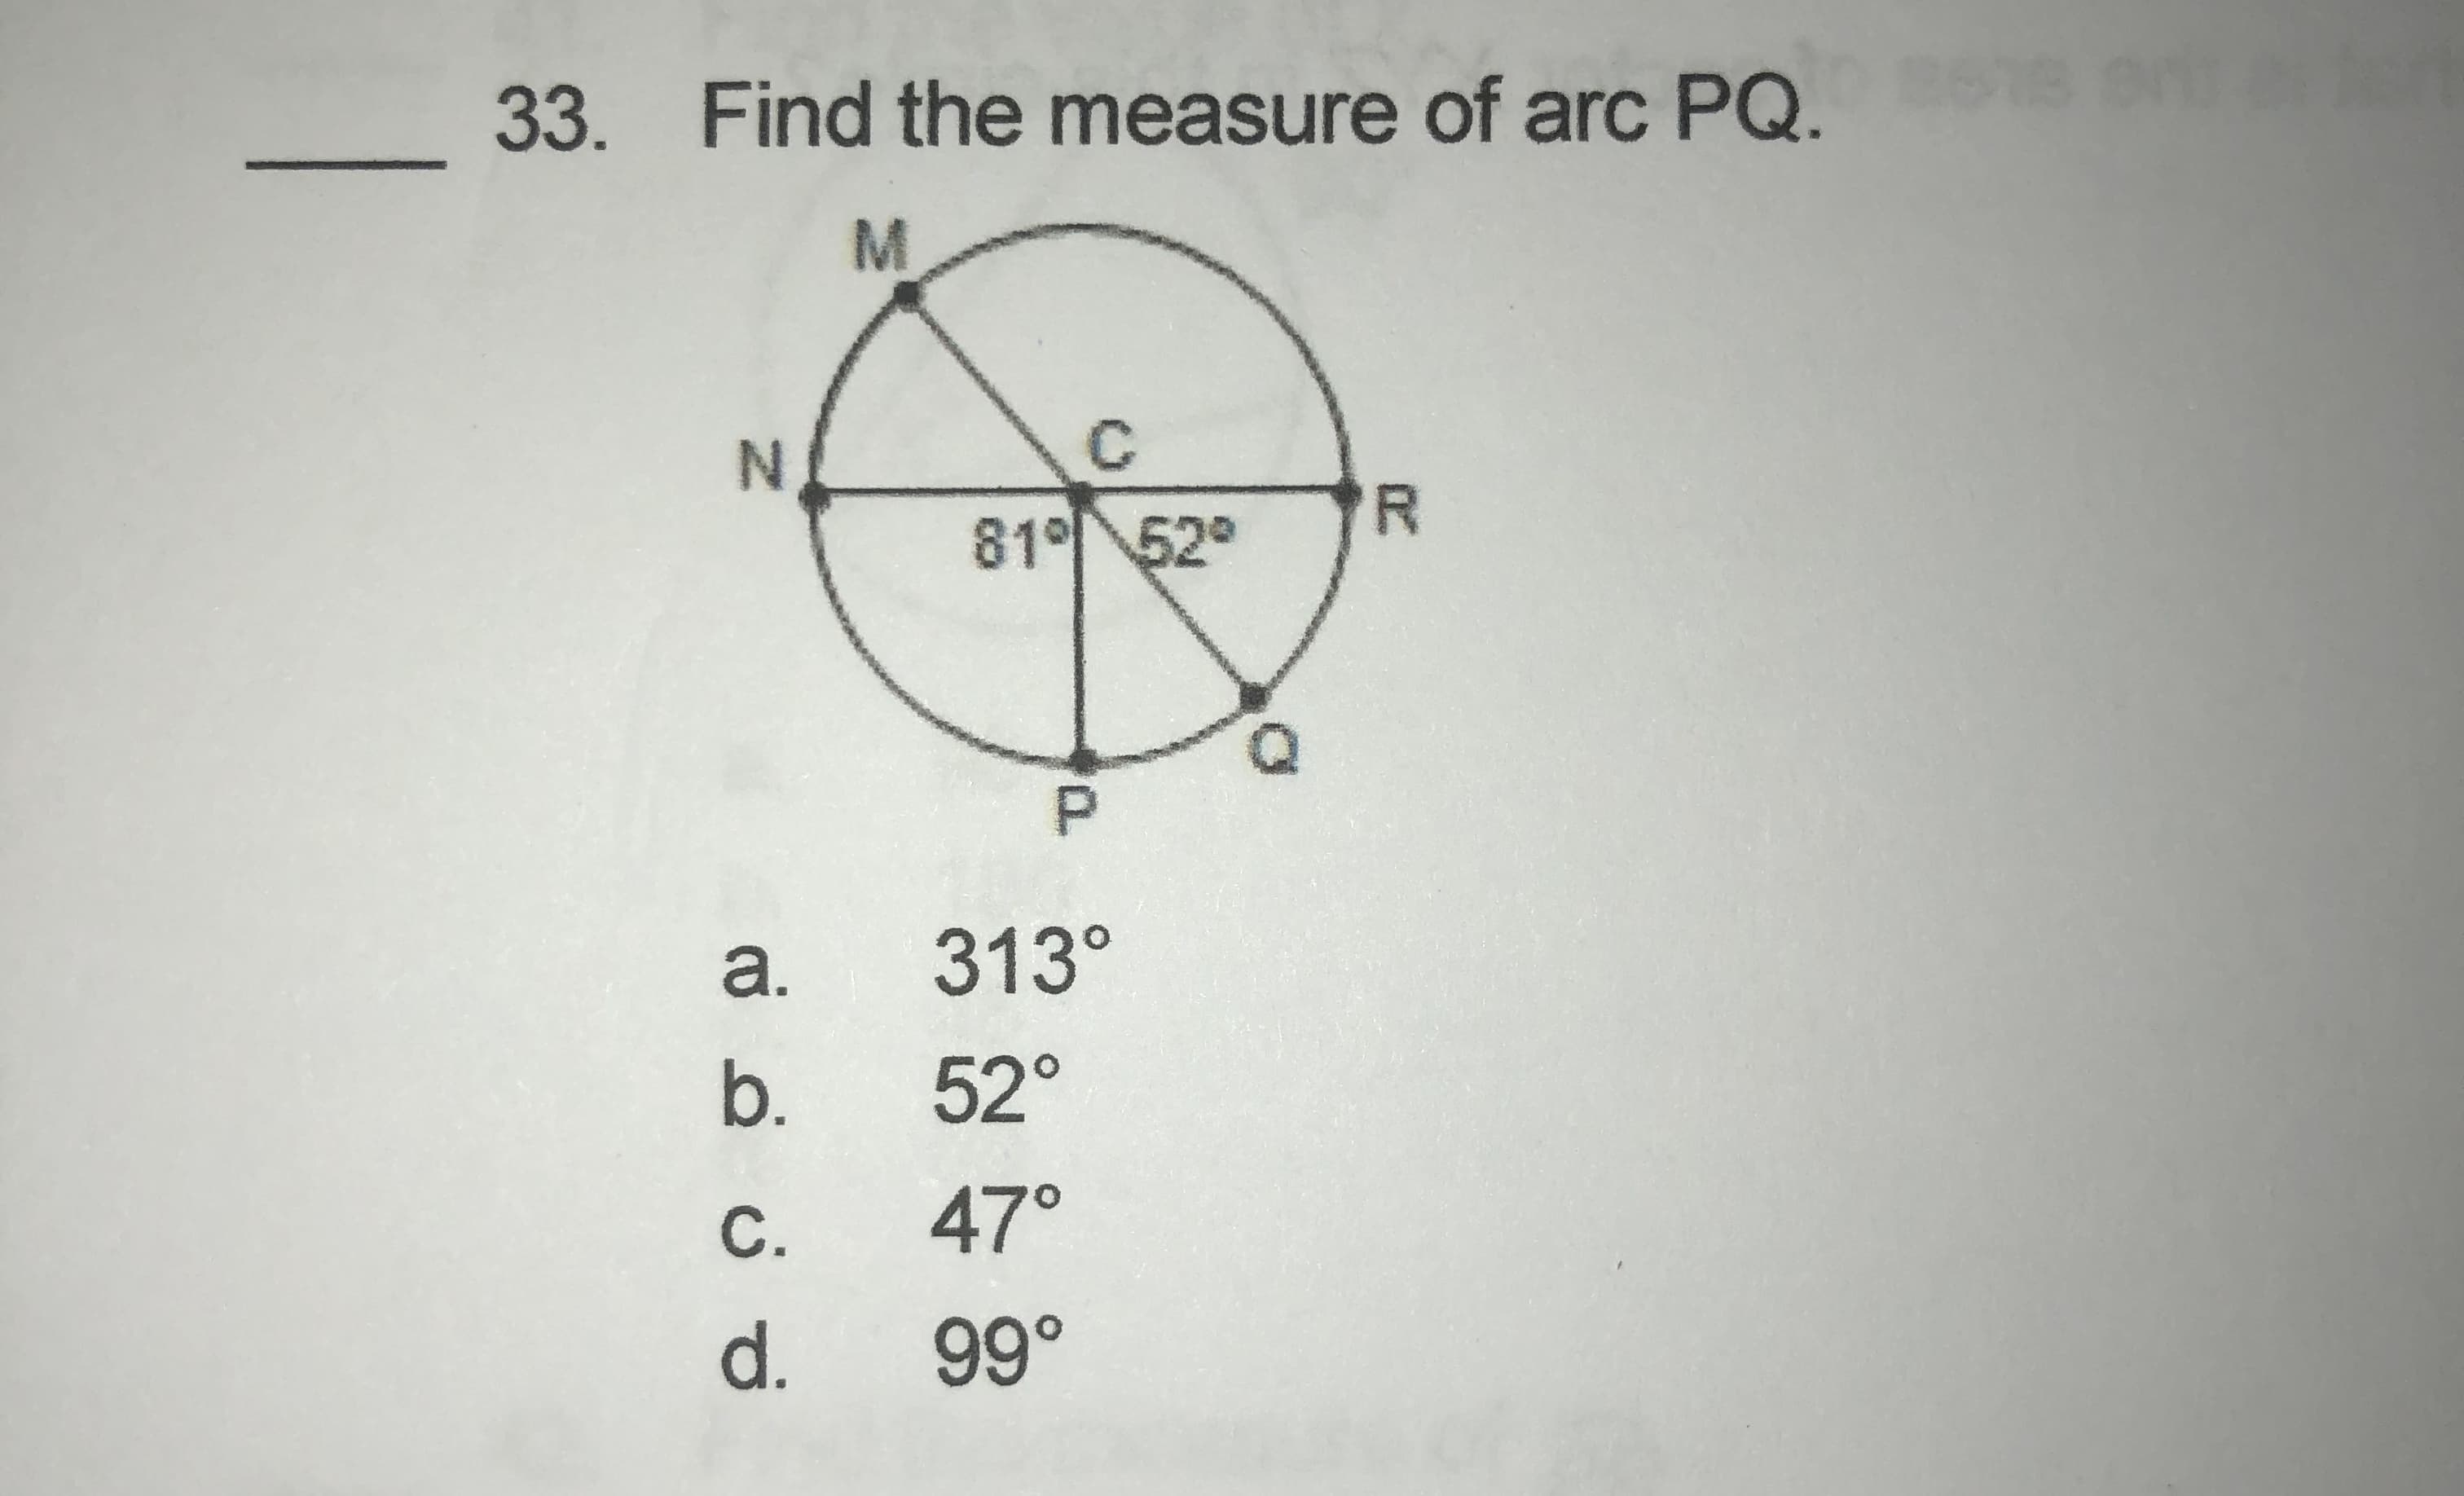 33. Find the measure of arc PQ. 15
M
C.
R
81° 52°
a.
313°
b.
52°
С.
47°
d.
99°
